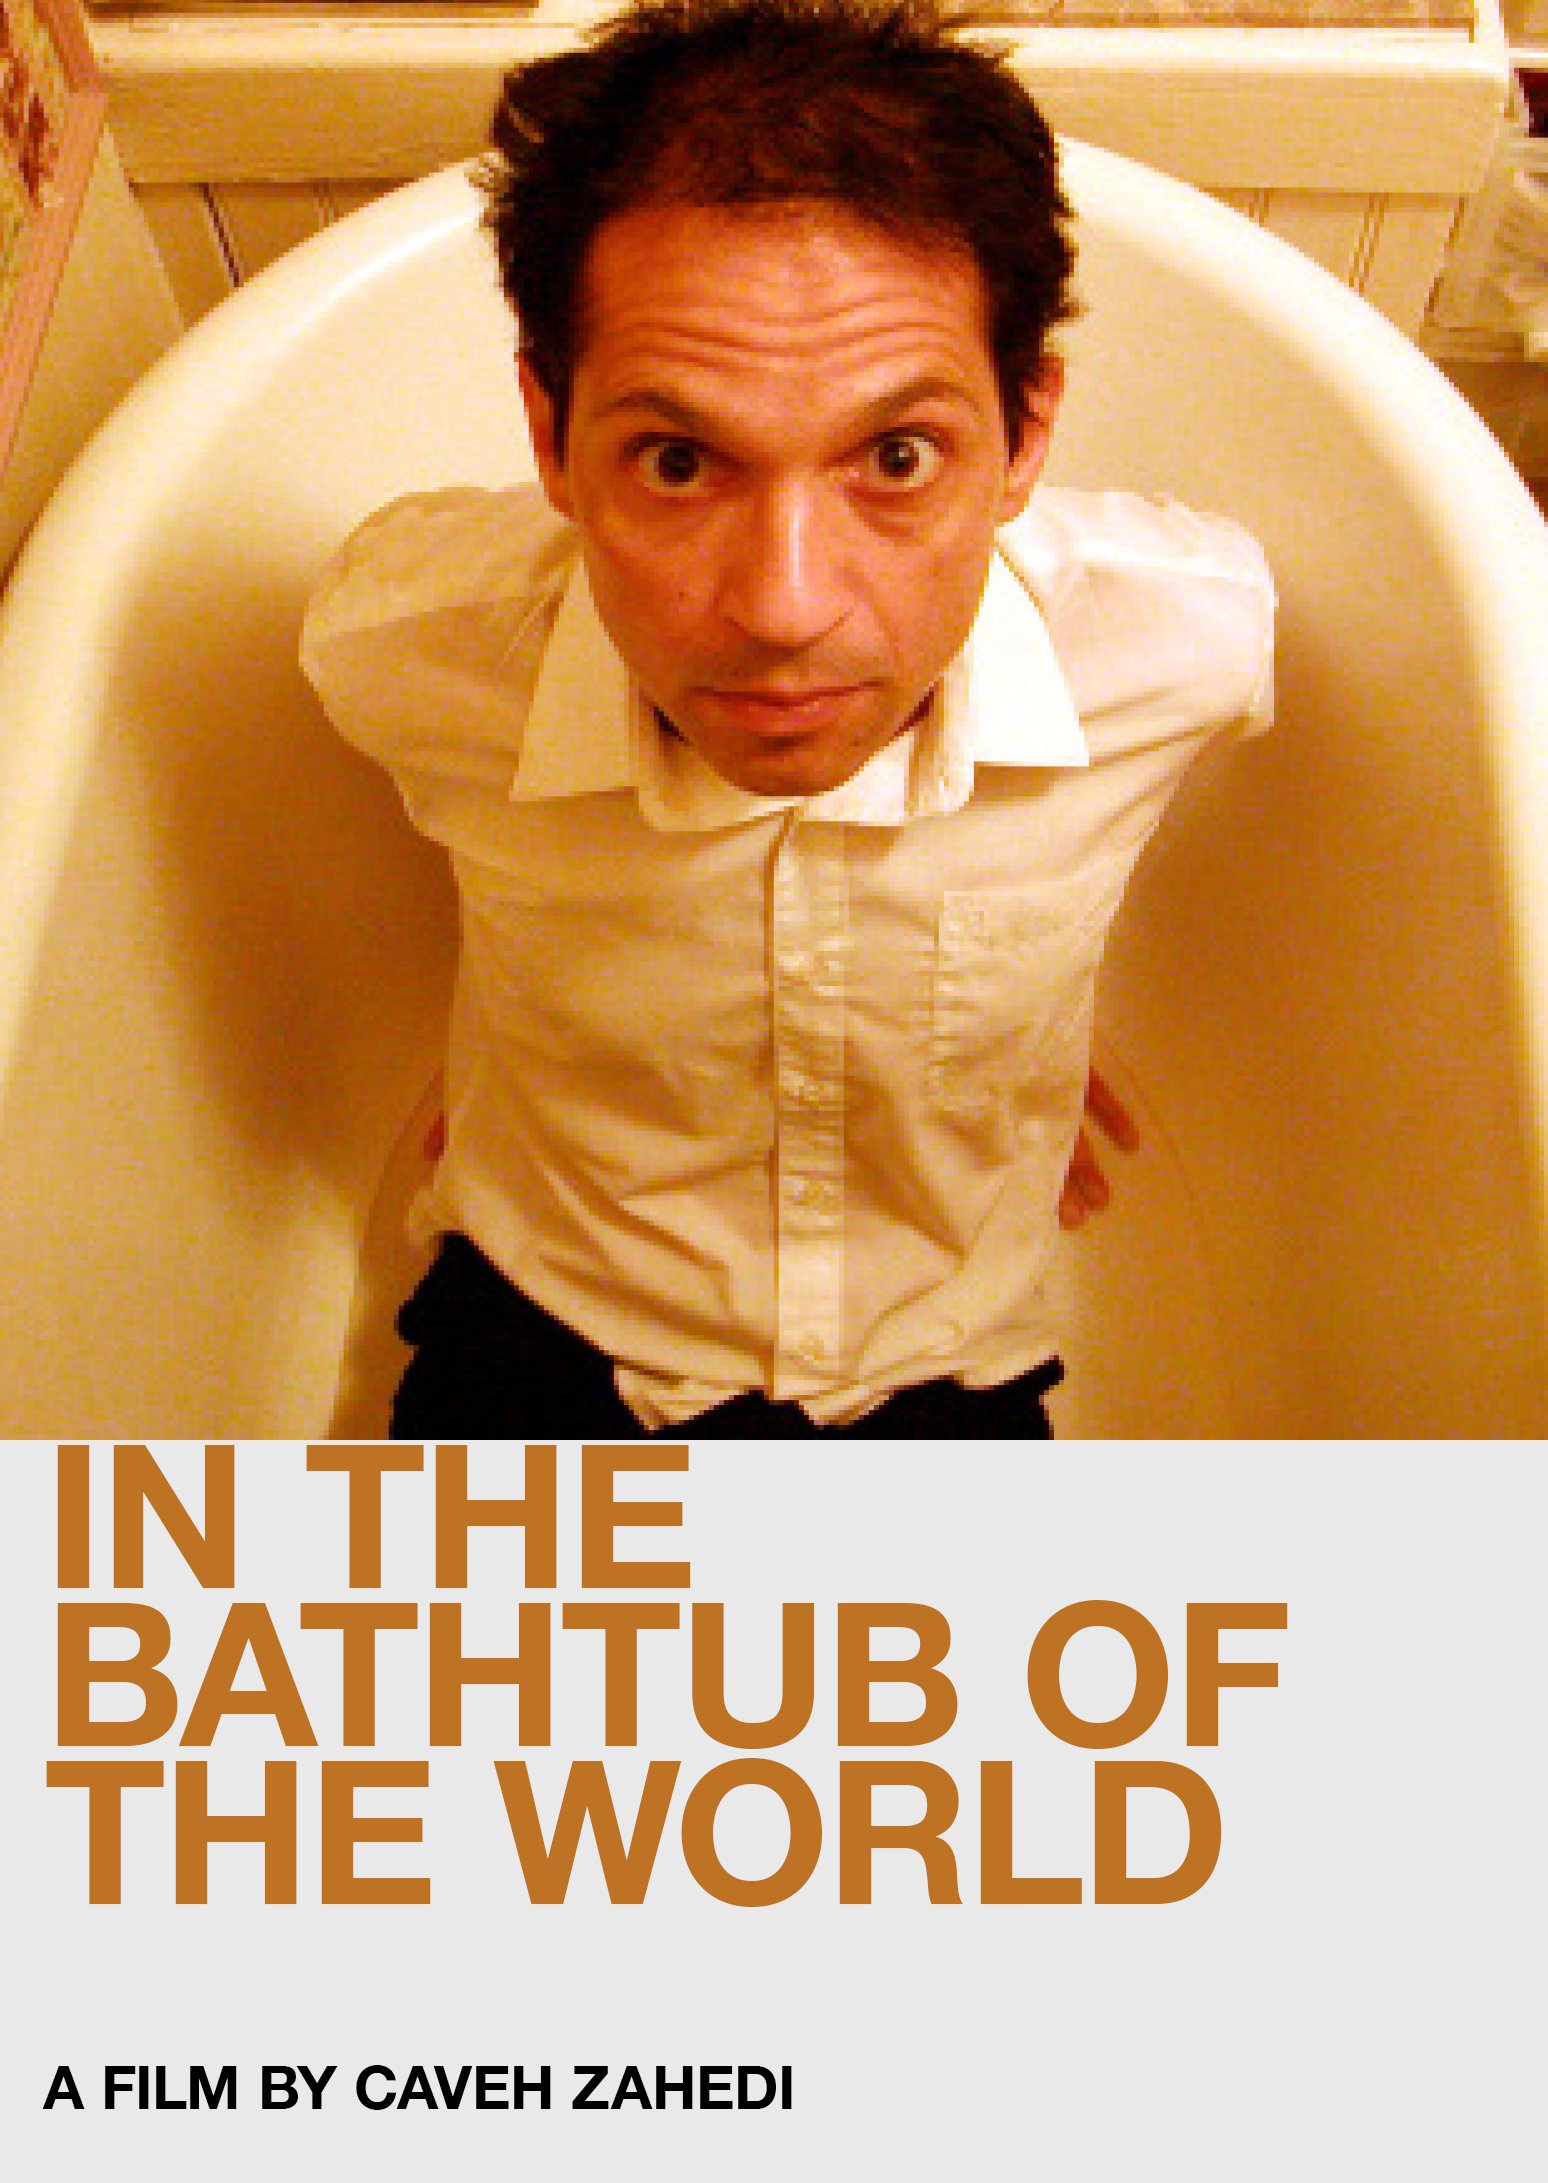 IN THE BATHTUB OF THE WORLD /// CAVEH ZEHEDI